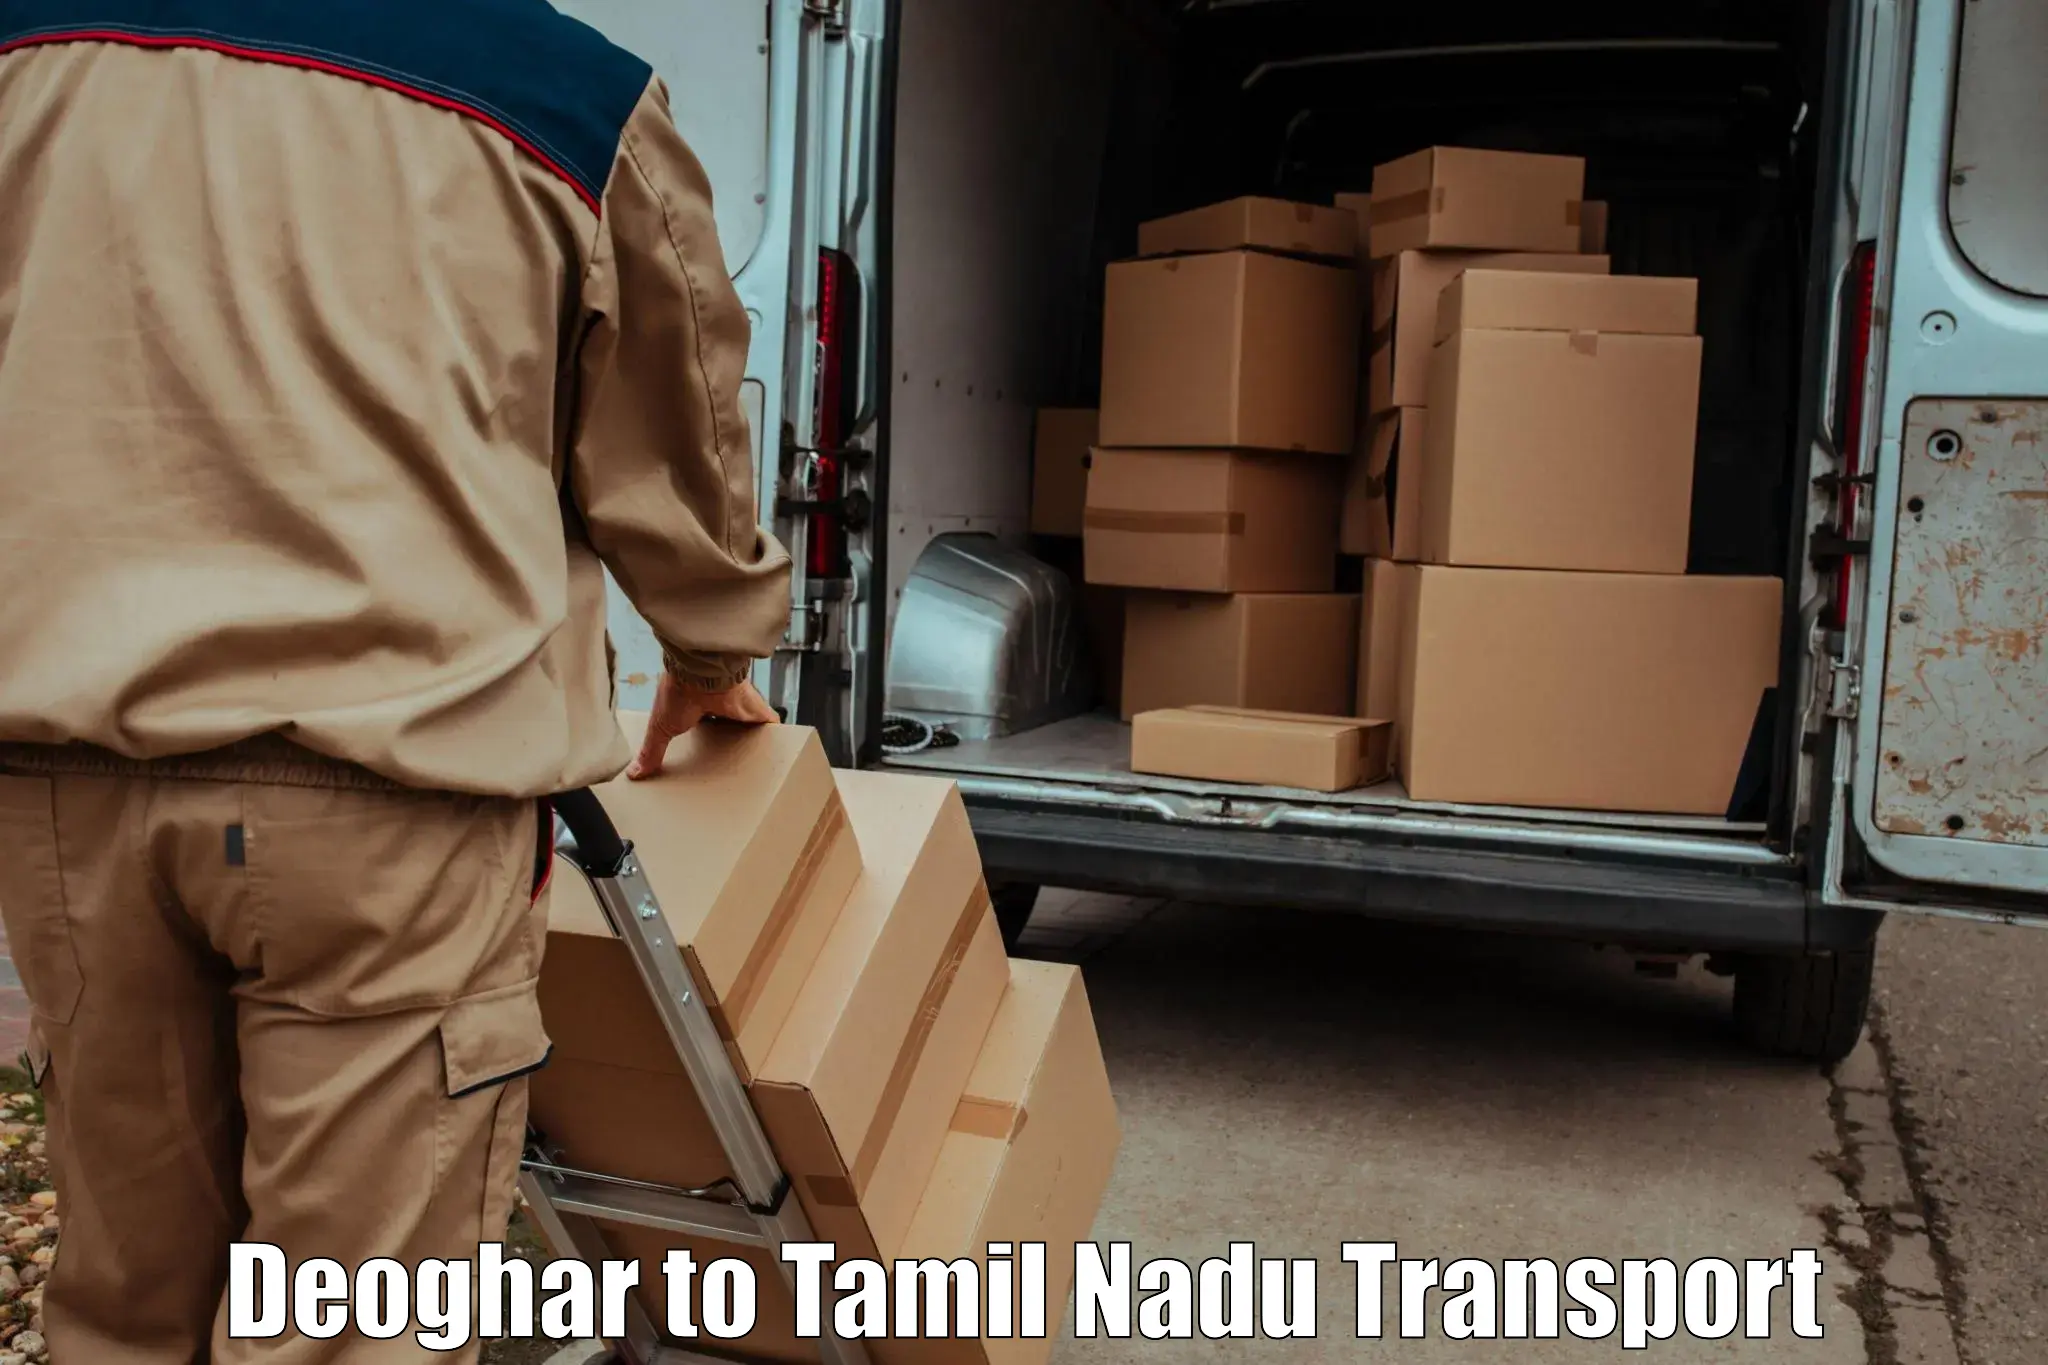 Furniture transport service Deoghar to Sholinghur